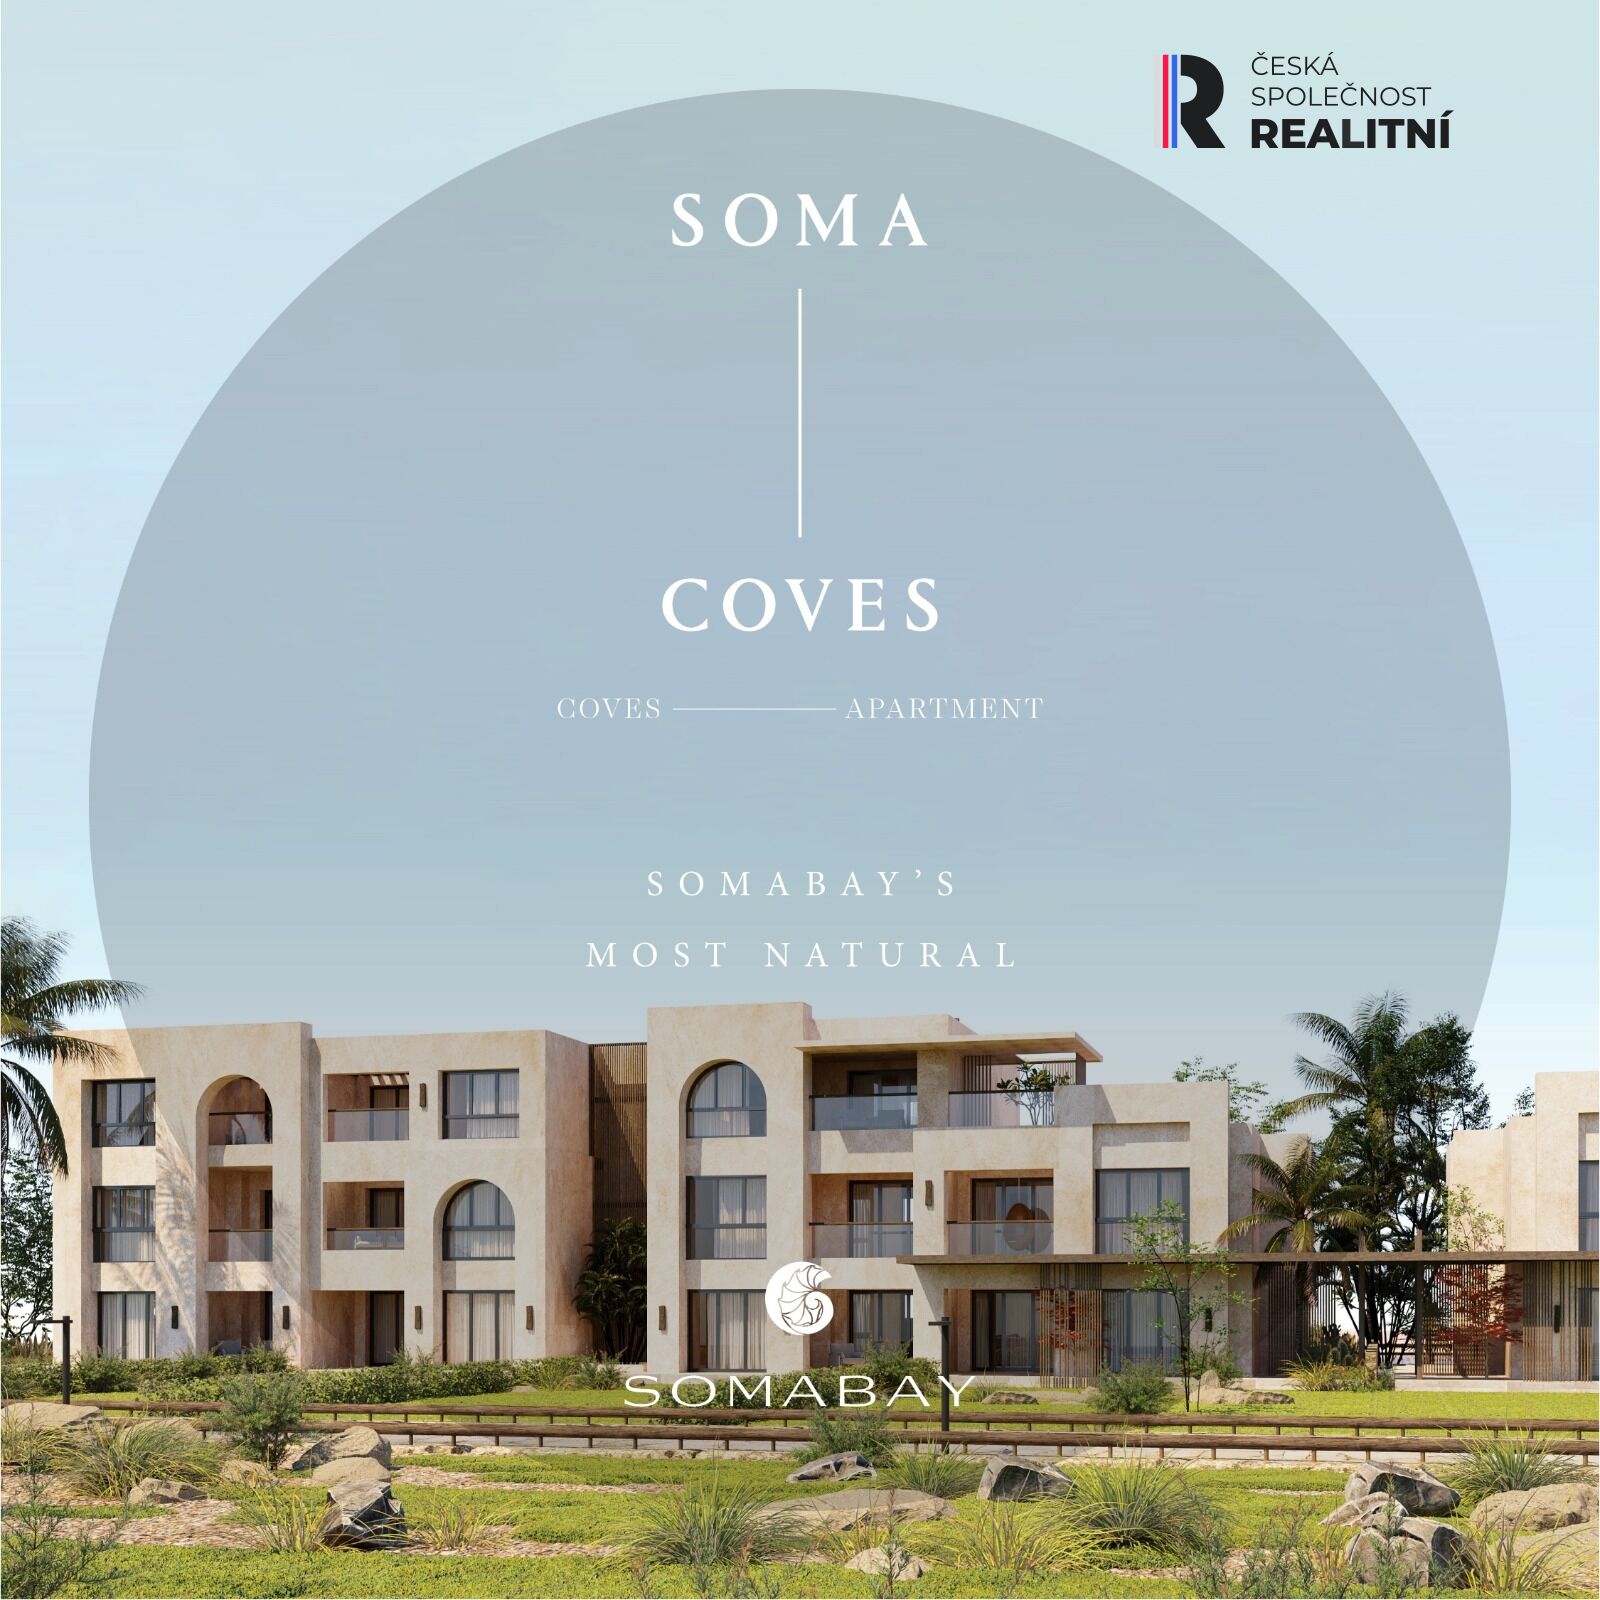 Prodej bytů 3kk ( 2x ložnice,2xkoupelna) na Soma Bay COVES všechny byty mají výhled na moře